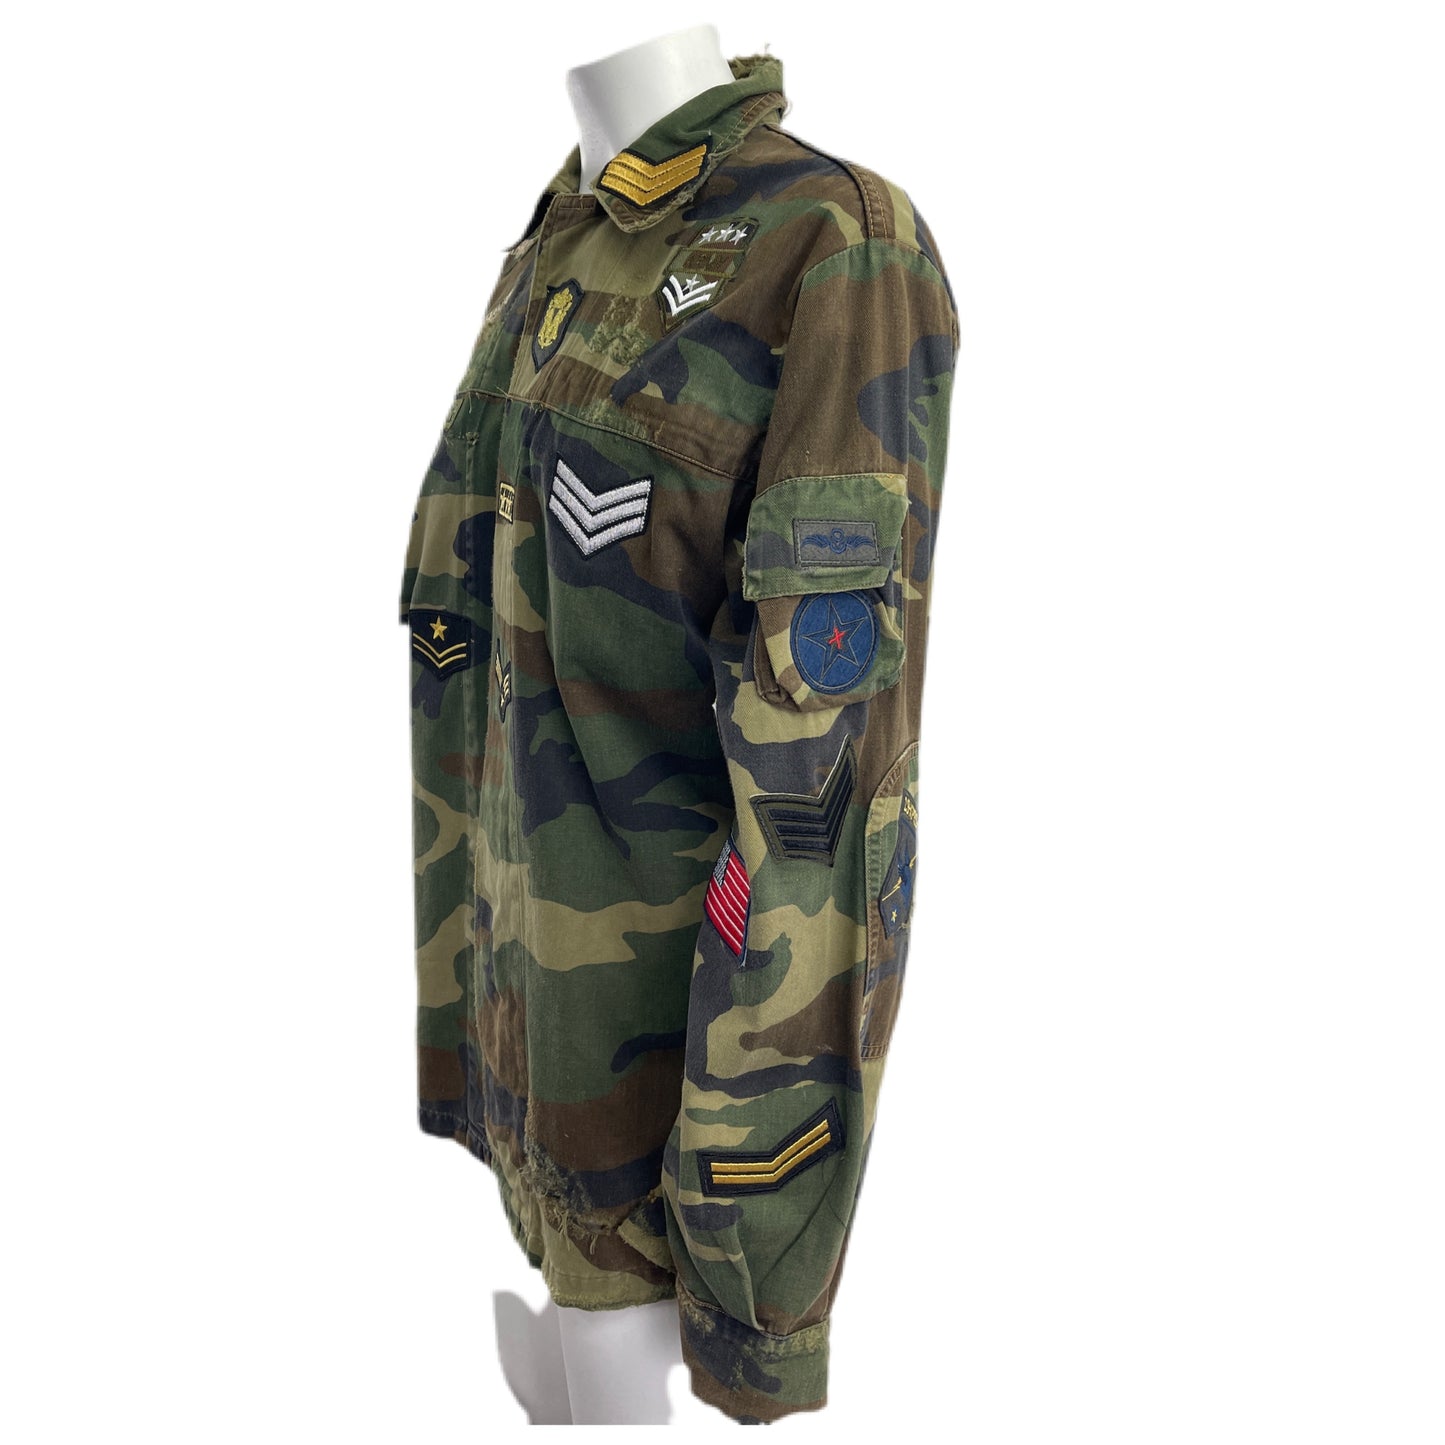 Camicia Militare Camouflage con patch militari,patch drago retro TG. L